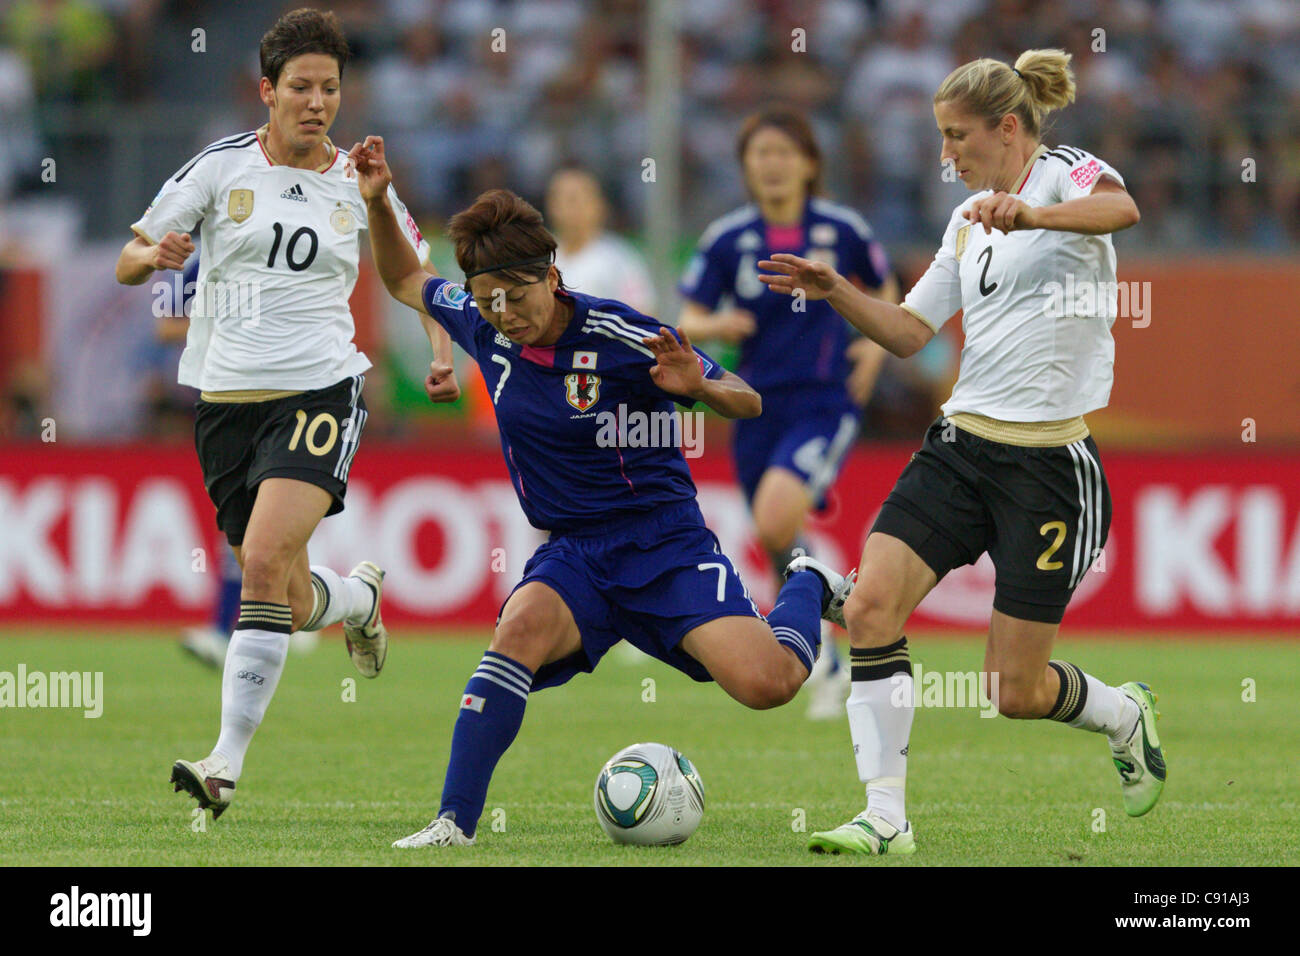 Kozue Ando von Japan (C) kämpft um den Ball gegen Linda Bresonik (L) und Bianca Schmidt von Deutschland während eines WM-Spiels. Stockfoto